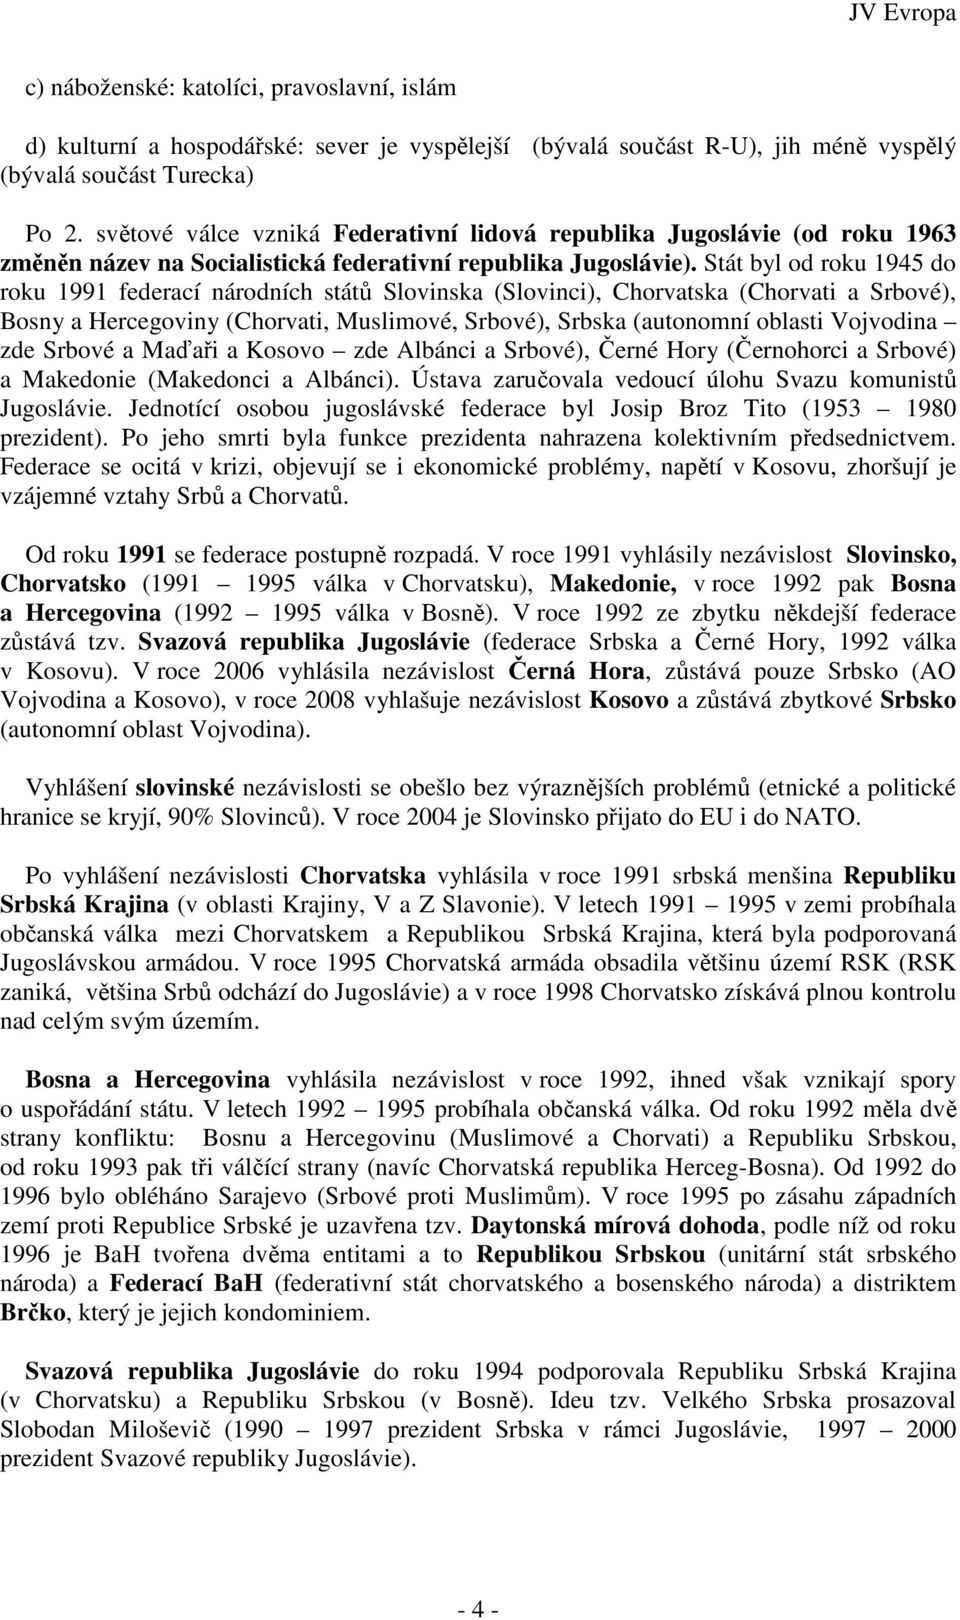 Stát byl od roku 1945 do roku 1991 federací národních států Slovinska (Slovinci), Chorvatska (Chorvati a Srbové), Bosny a Hercegoviny (Chorvati, Muslimové, Srbové), Srbska (autonomní oblasti